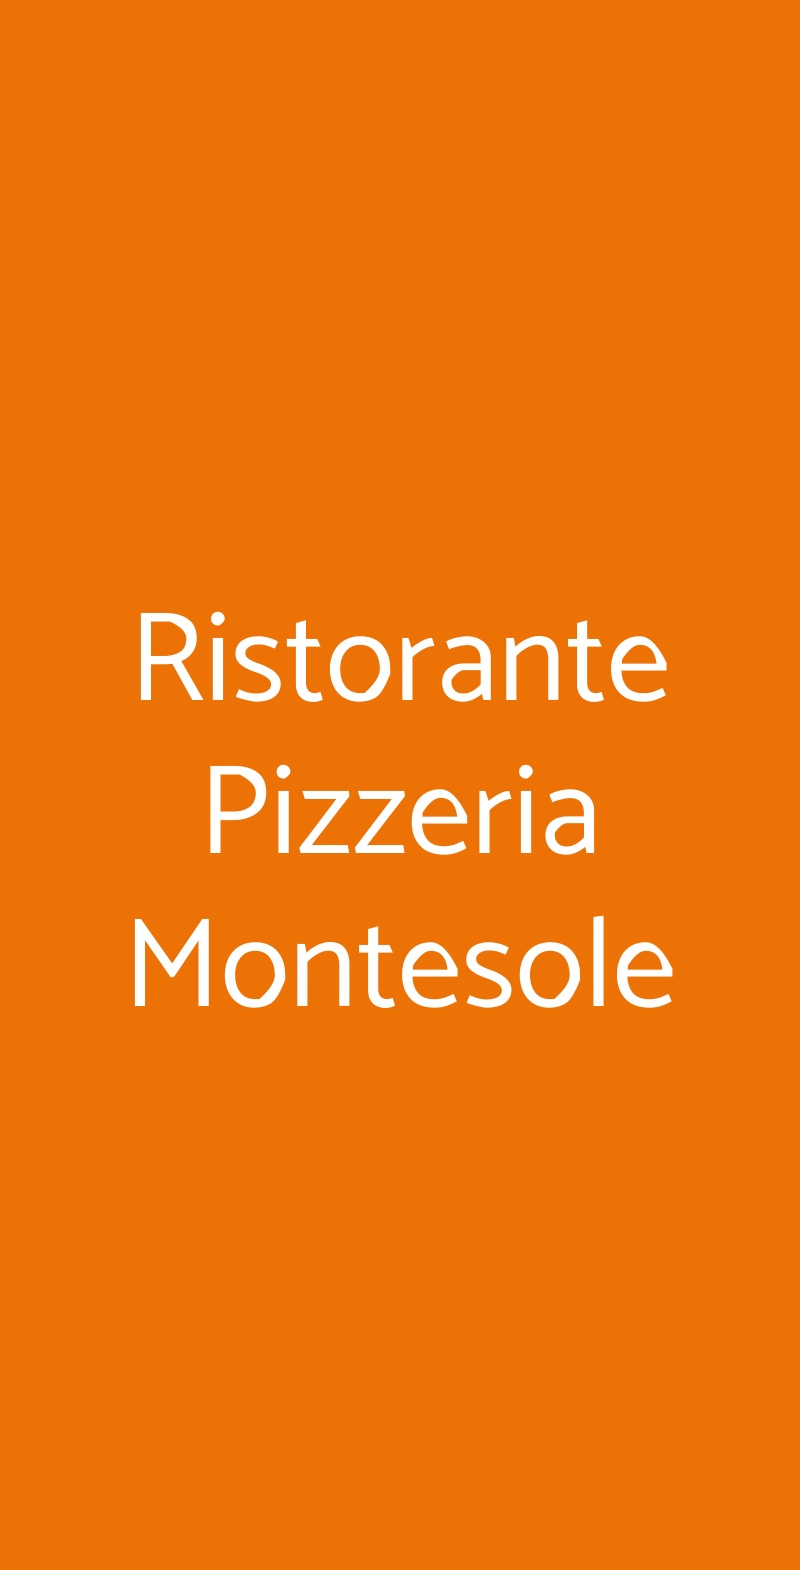 Ristorante Pizzeria Montesole Porto Valtravaglia menù 1 pagina